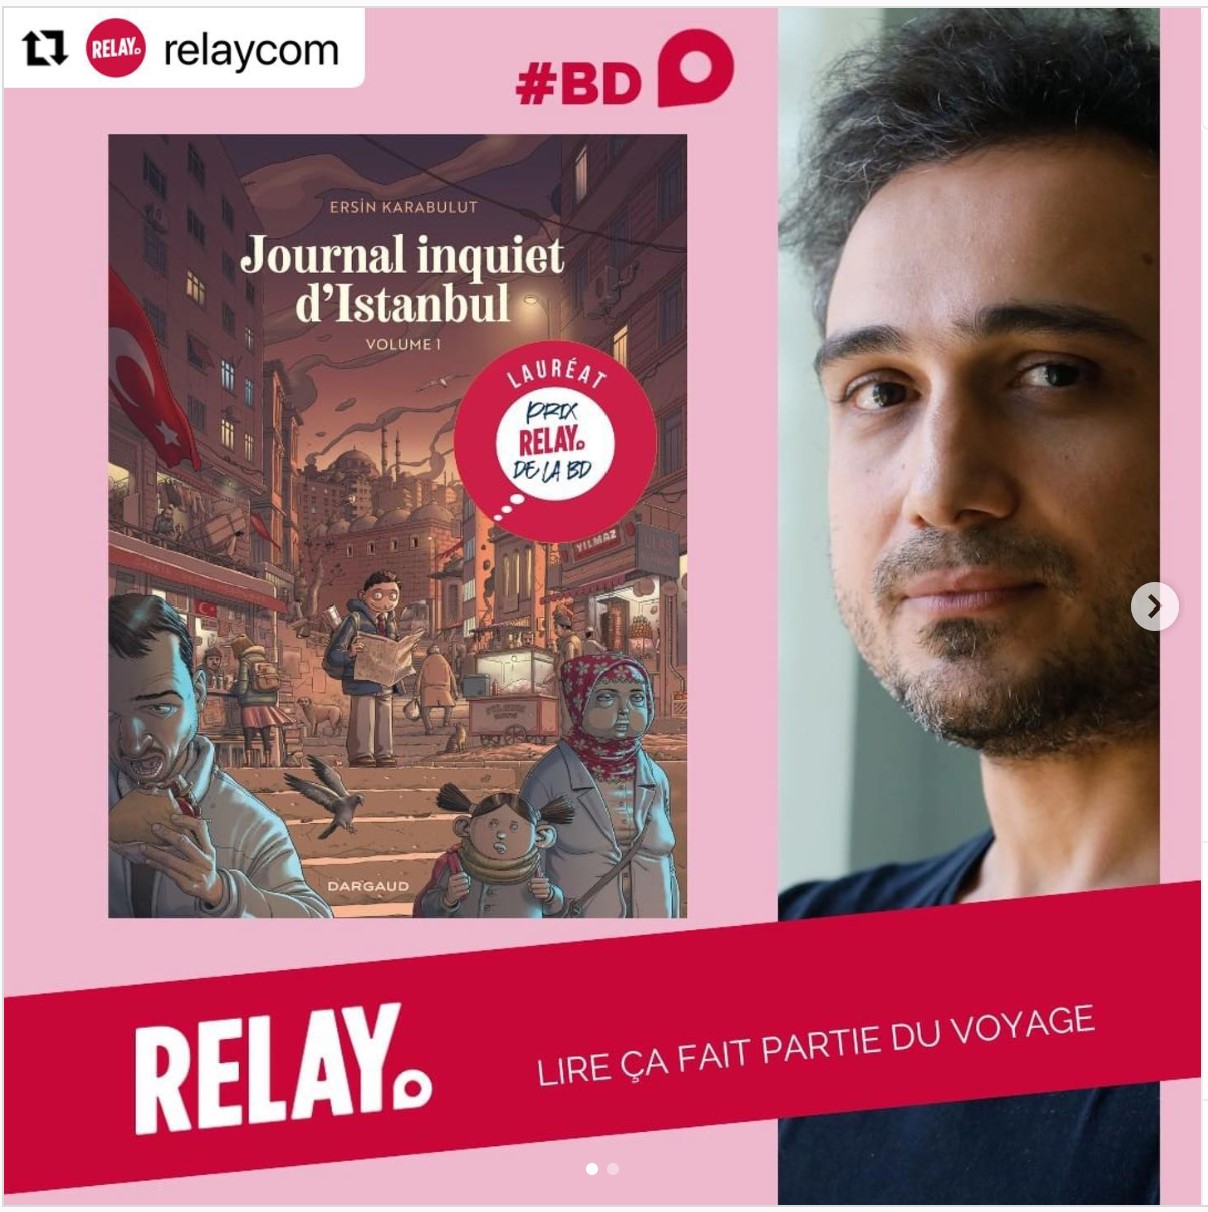 Prix Relay de la BD pour Ersin Karabulut et son « Journal Inquiet d‘Istanbul » !